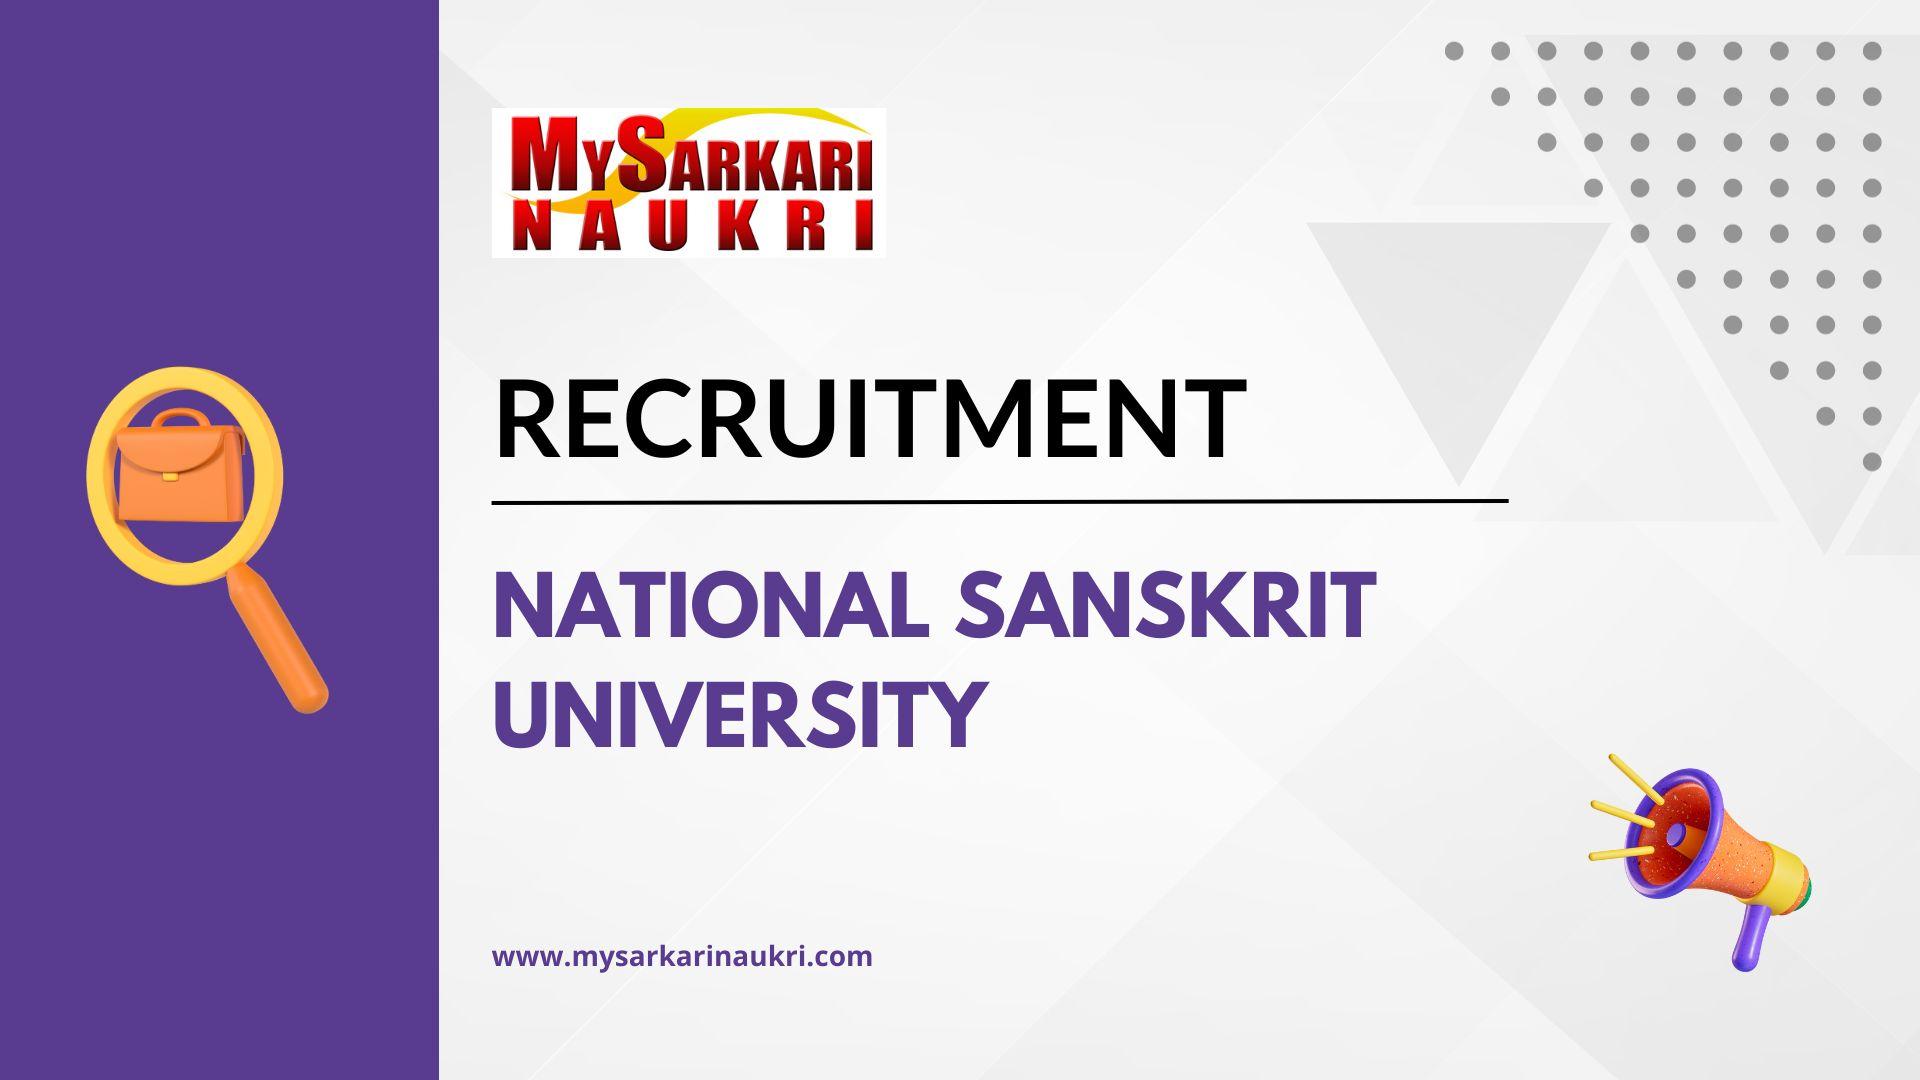 National Sanskrit University Recruitment